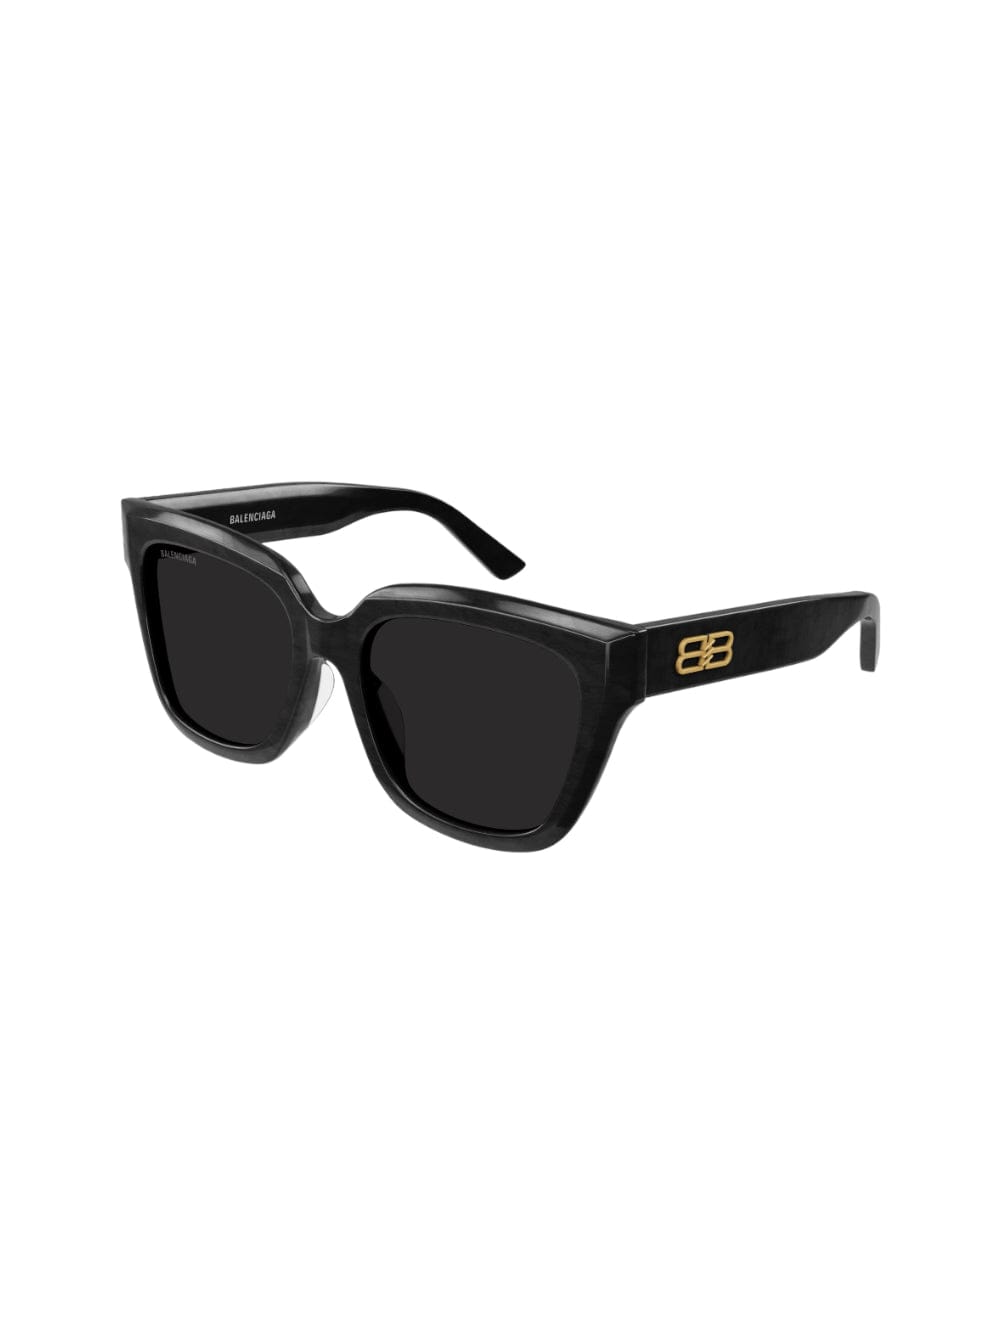 Balenciaga Bb0237 - Black Scratched Sunglasses